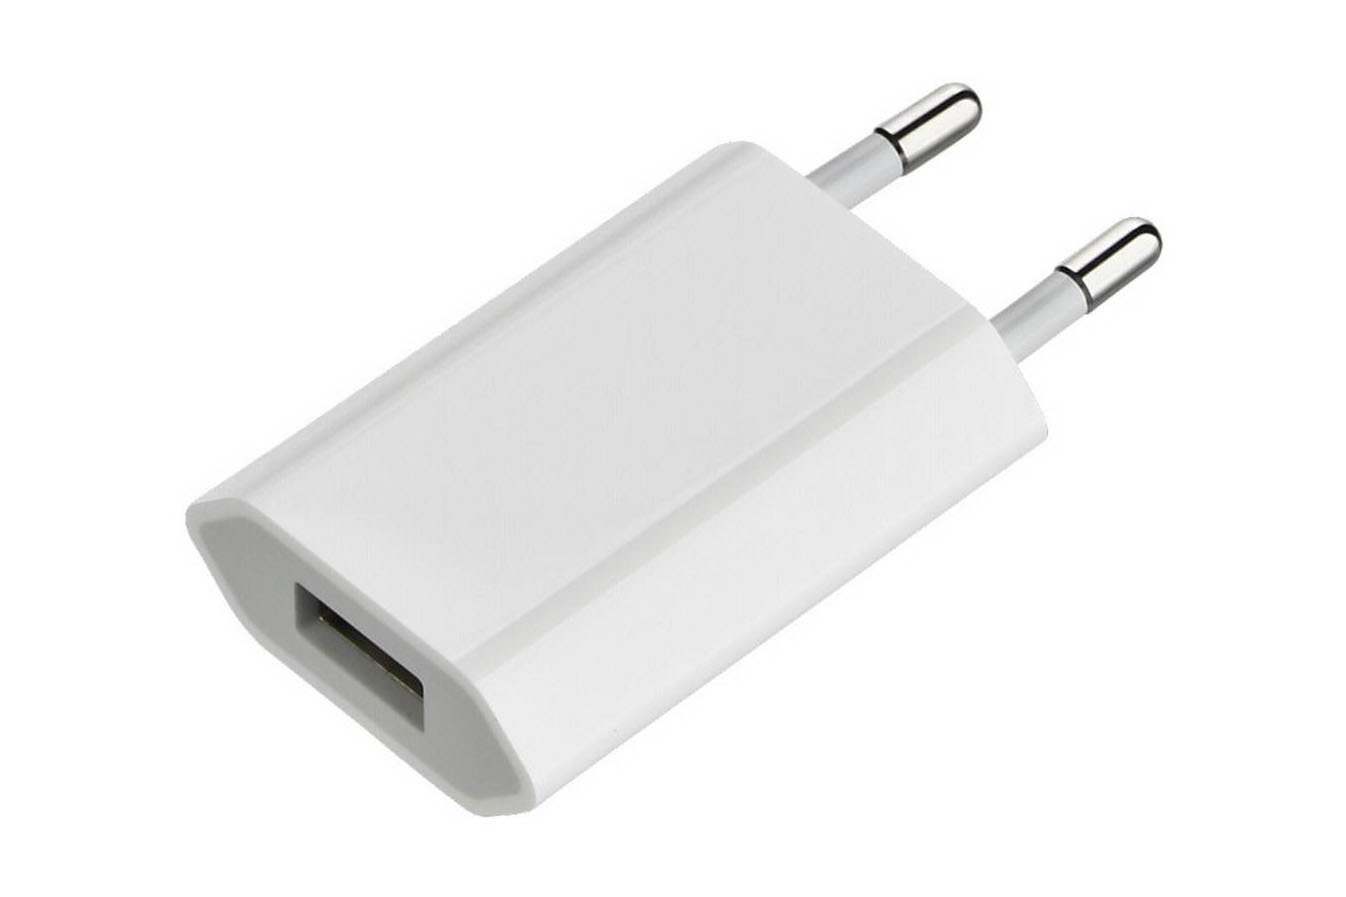 Usb переходник для зарядки телефона. Apple 5w USB Power Adapter. Apple USB Power Adapter a1400. Сетевая зарядка Apple md813zm/a. СЗУ Apple 5w.